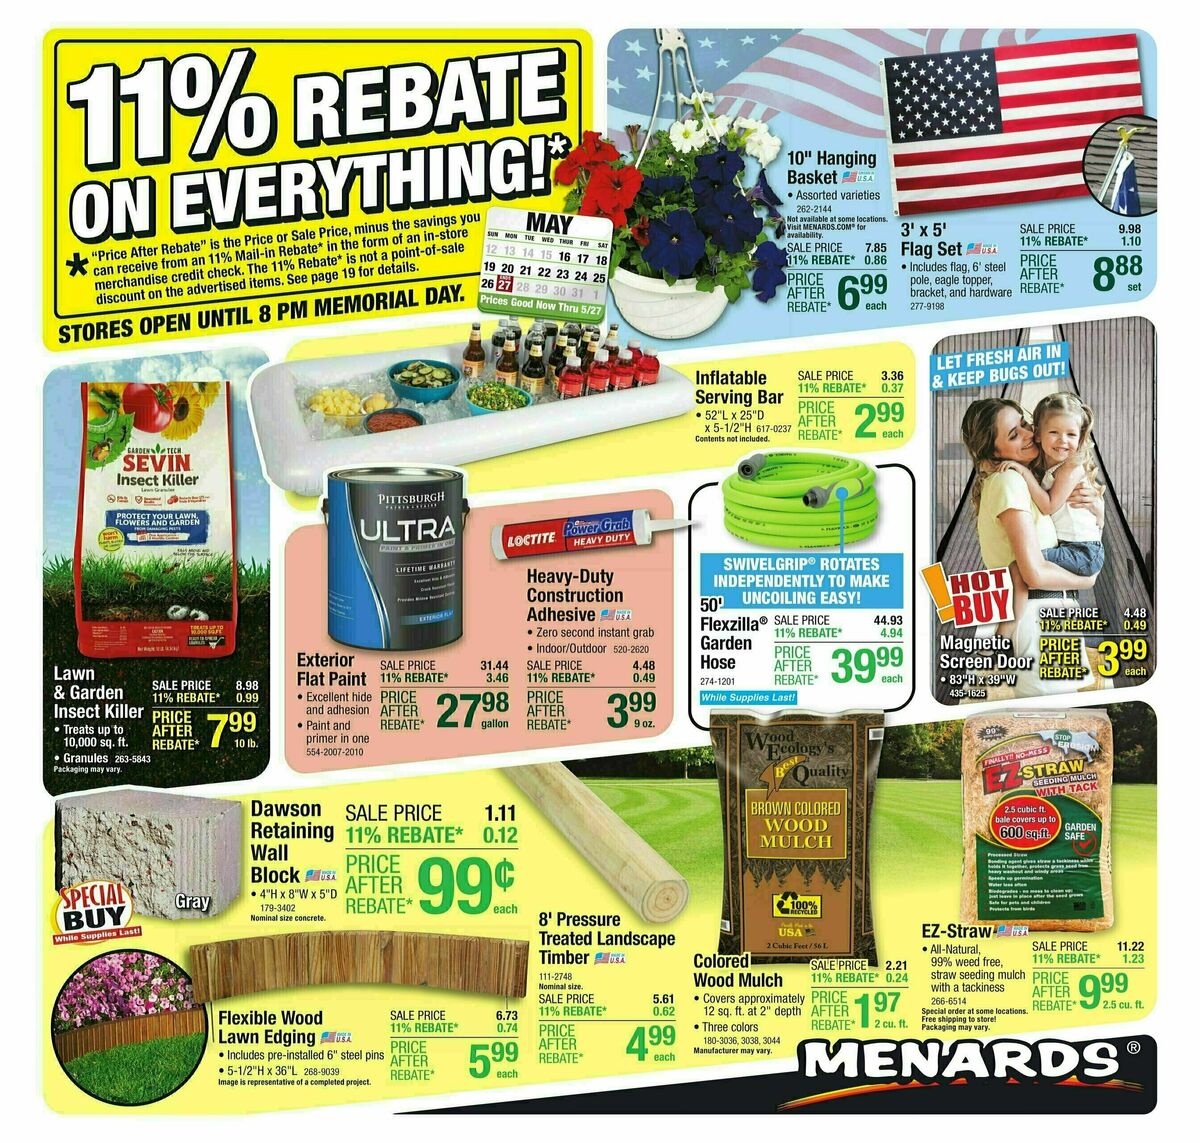 Menards 11% Rebate Sale Weekly Ad from May 15